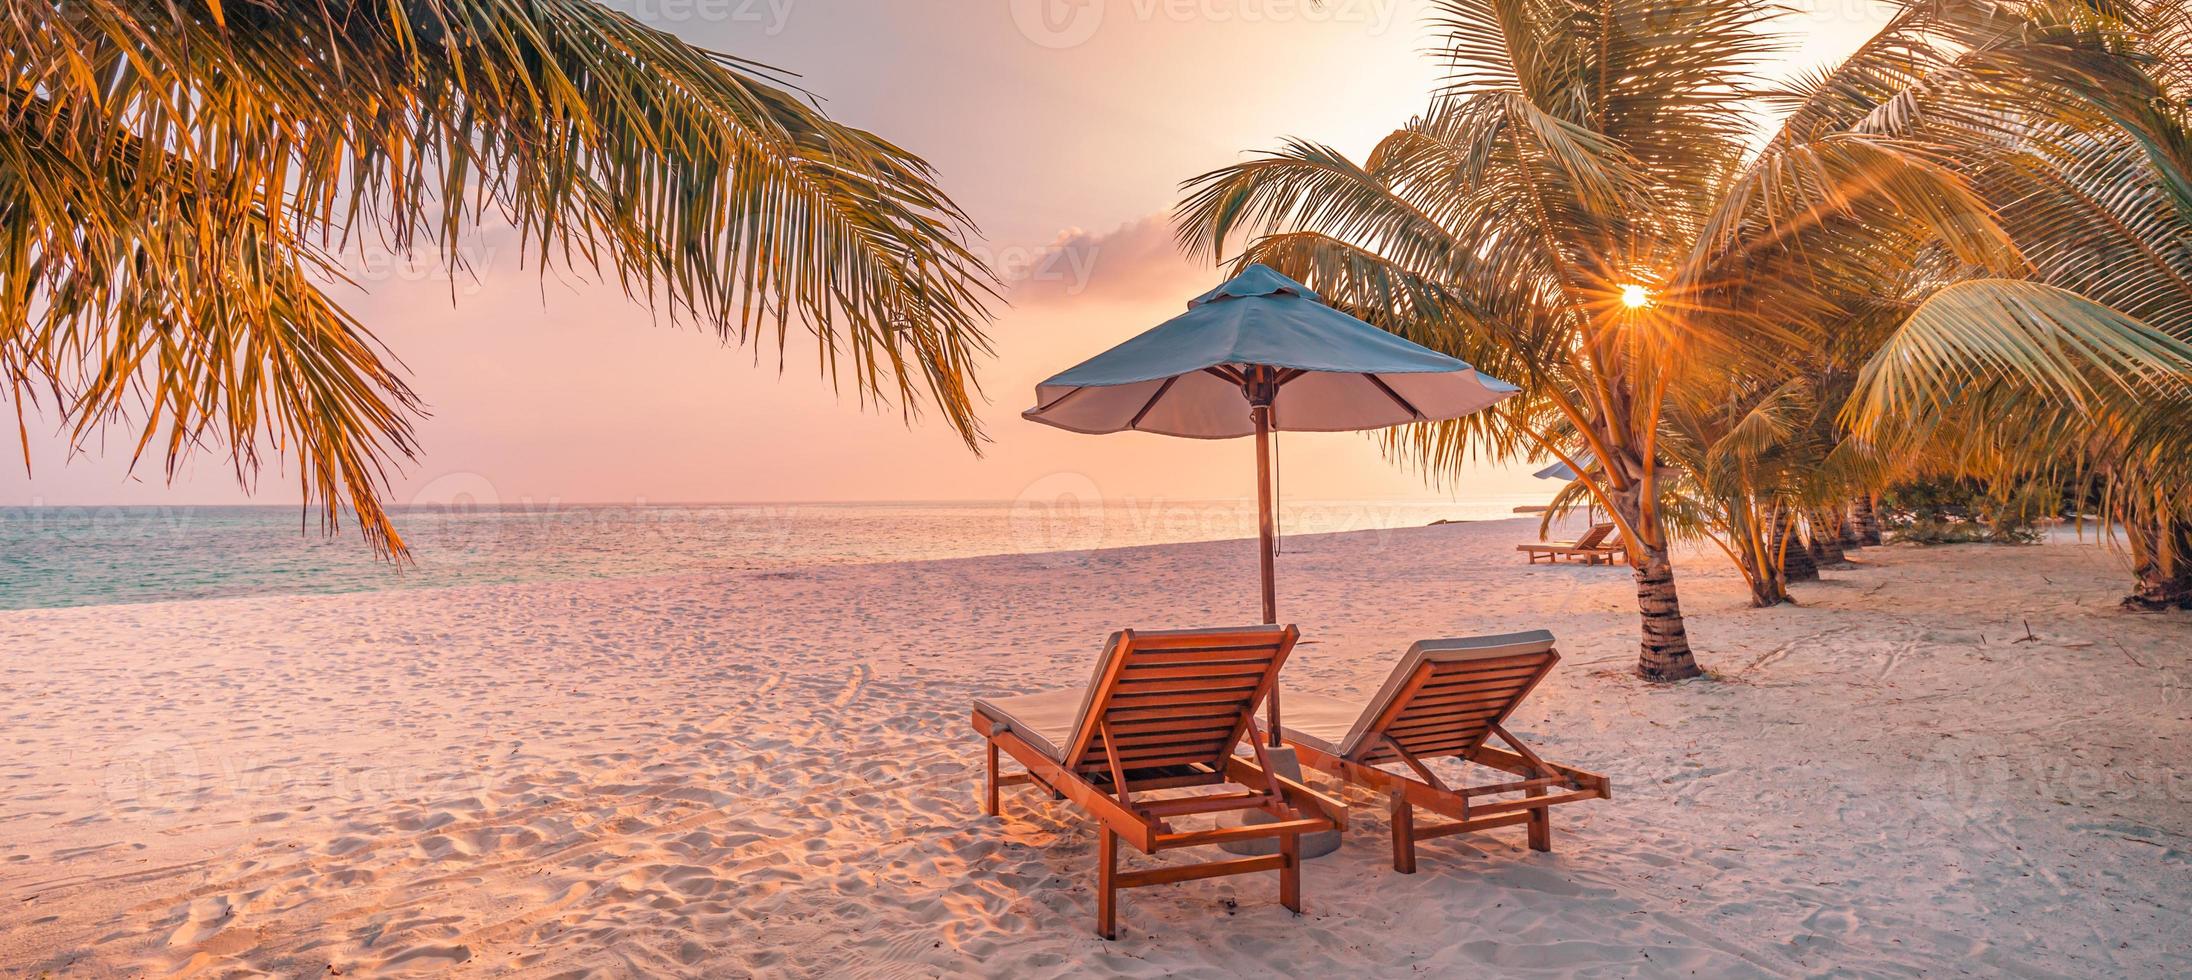 incredibile spiaggia romantica. sedie sulla spiaggia di sabbia vicino al mare. concetto di vacanza estiva per il turismo. paesaggio dell'isola tropicale. tranquillo paesaggio costiero, relax orizzonte balneare, foglie di palma foto